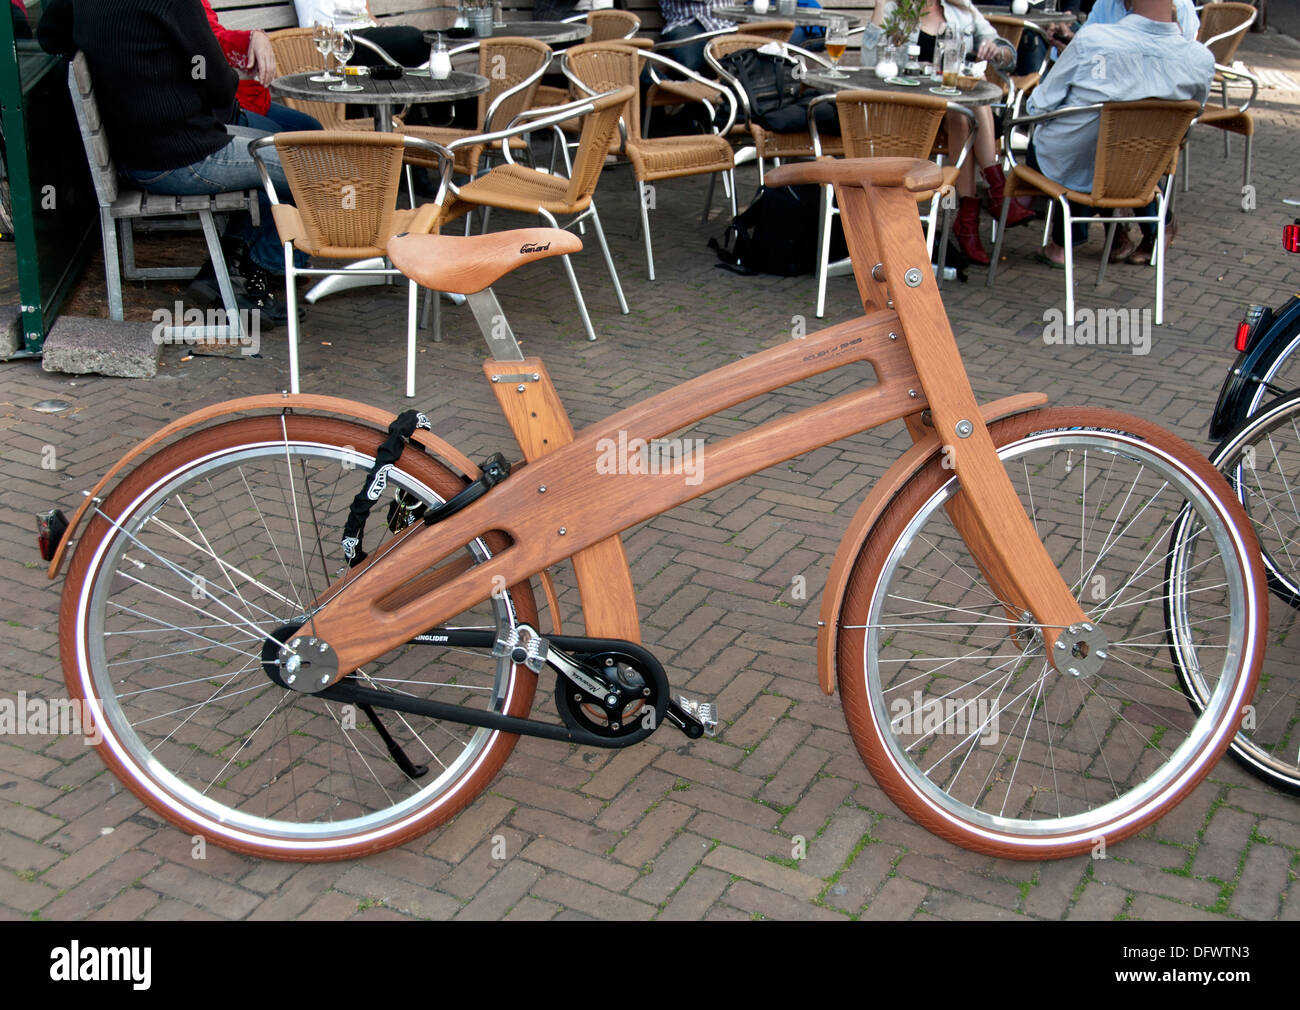 Ast Fahrrad Niederlande Amsterdam Aus Holz Fahrrad Stockfotografie Alamy